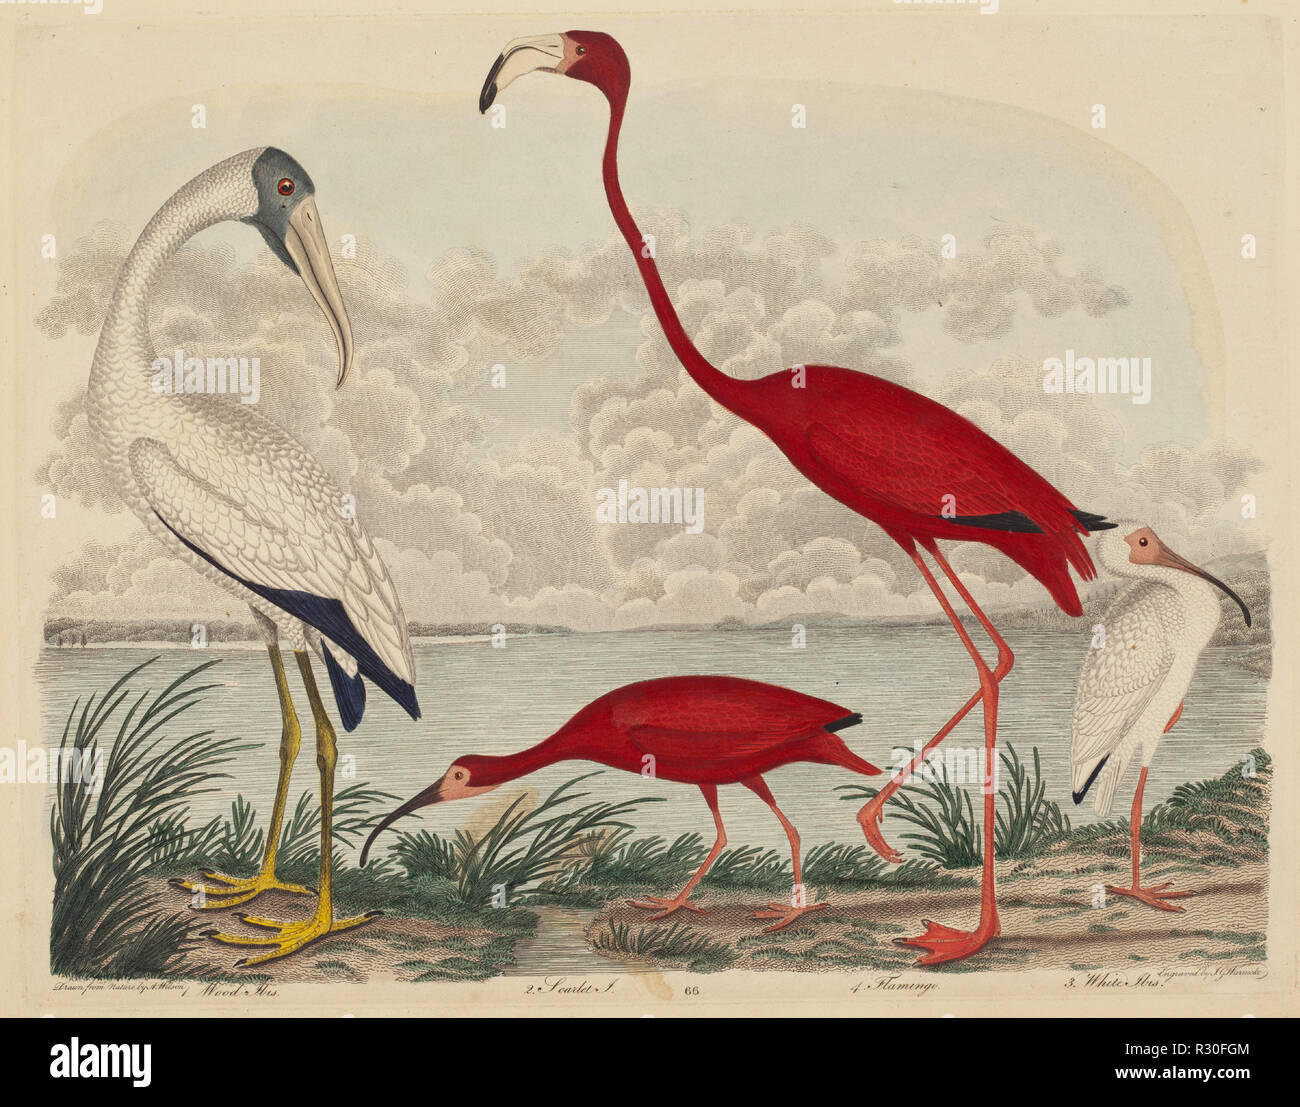 Holz Ibis, Scarlet Ibis, Flamingo, und weiße Ibis. Vom: 1808-1814 veröffentlicht. Abmessungen: Platte: 25,9 x 33,7 cm (10 1/4 x 13 1/4 in.) Blatt: 28,1 x 36,4 cm (11 1/16 x 14 5/16 in.). Medium: Hand - farbige Gravur mit Gravur am Spann Papier. Museum: Nationalgalerie, Washington DC. Autor: John G. Warnicke nach Alexander Wilson. WILSON, A. Stockfoto